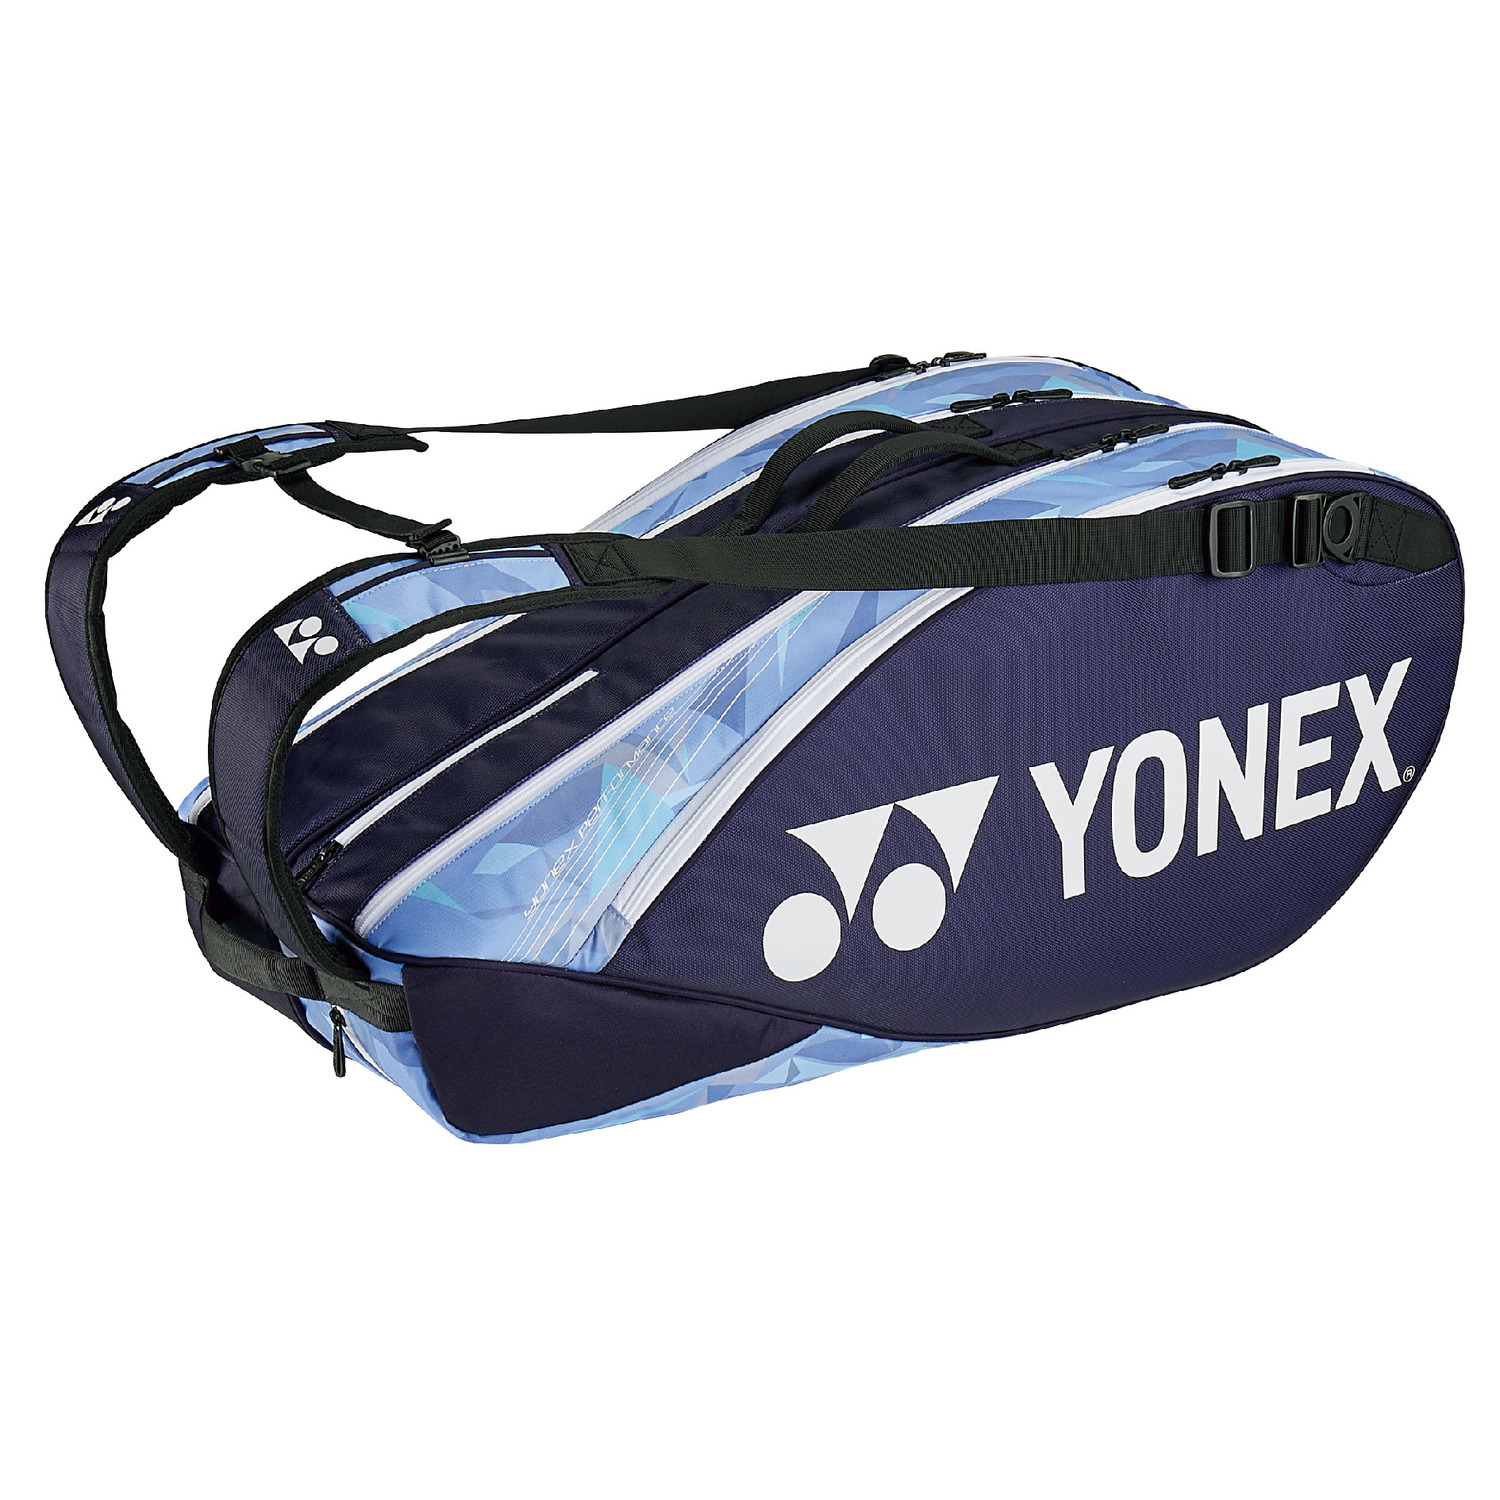 2040円 激安 激安特価 送料無料 YONEX ラケットバッグ ヨネックス